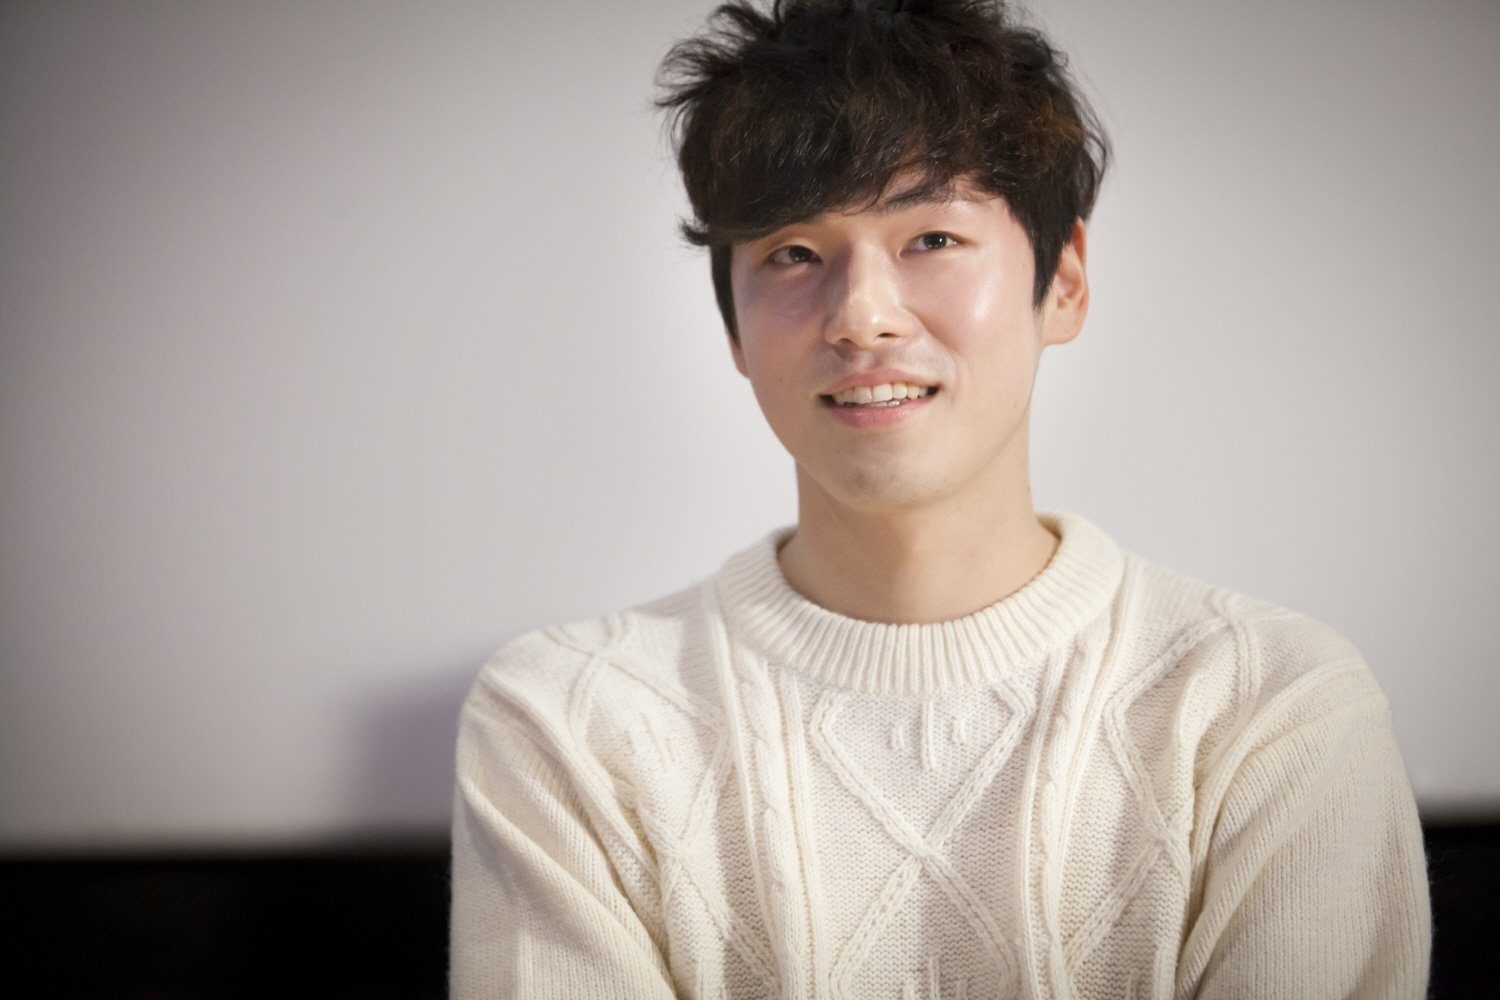 Kim Jung-Hyun (actor, born 1990)